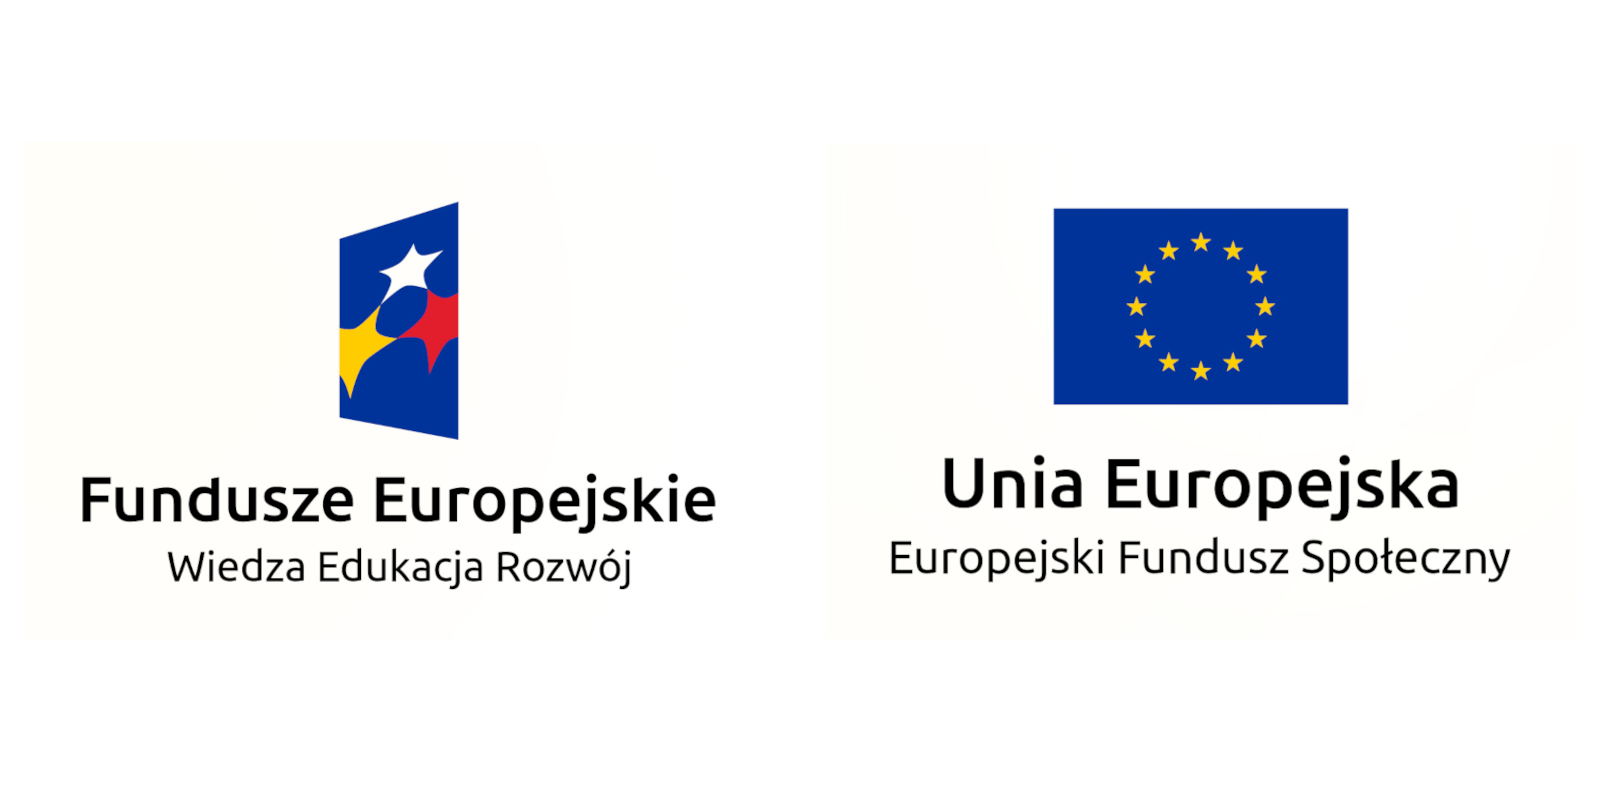 Loba Funduszy Europejskich i Unii Europejskiej